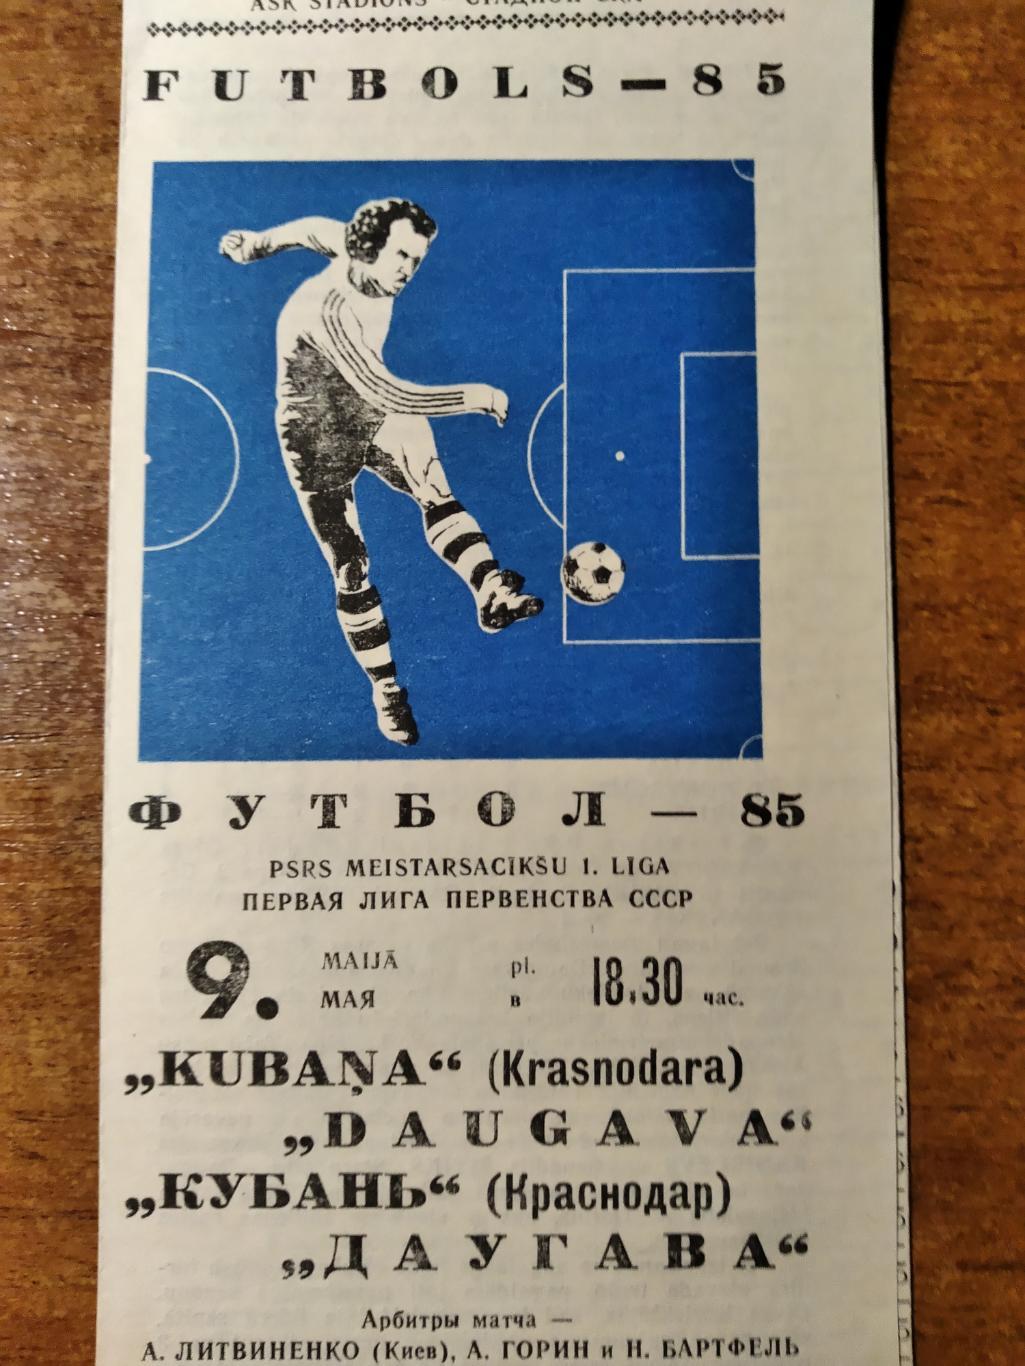 ПрограммаДаугава(Рига)- Кубань(Краснодар) Первая лига Ч СССР 1985г.